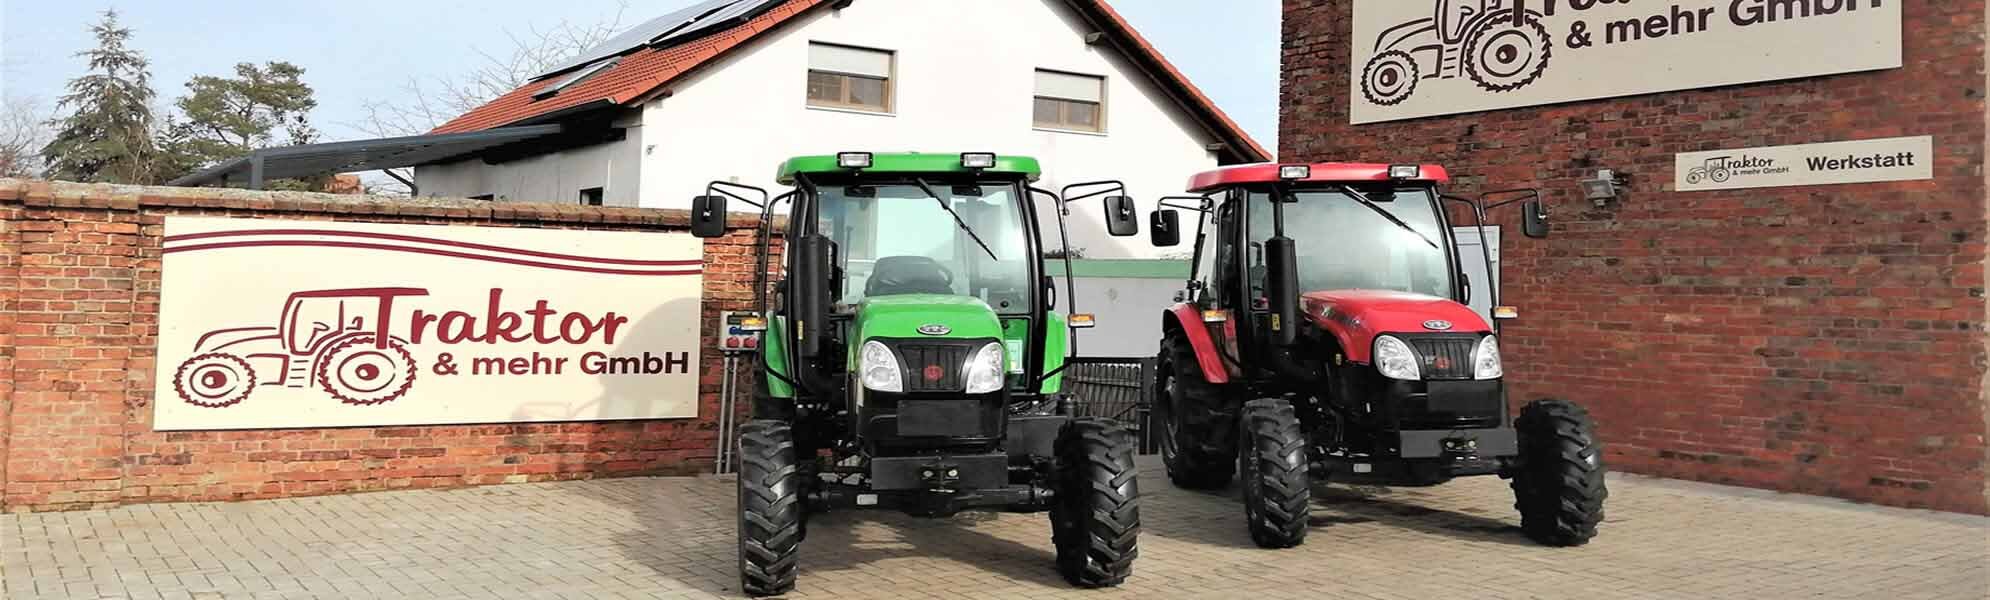 Traktor & mehr GmbH - Herzlich willkommen!